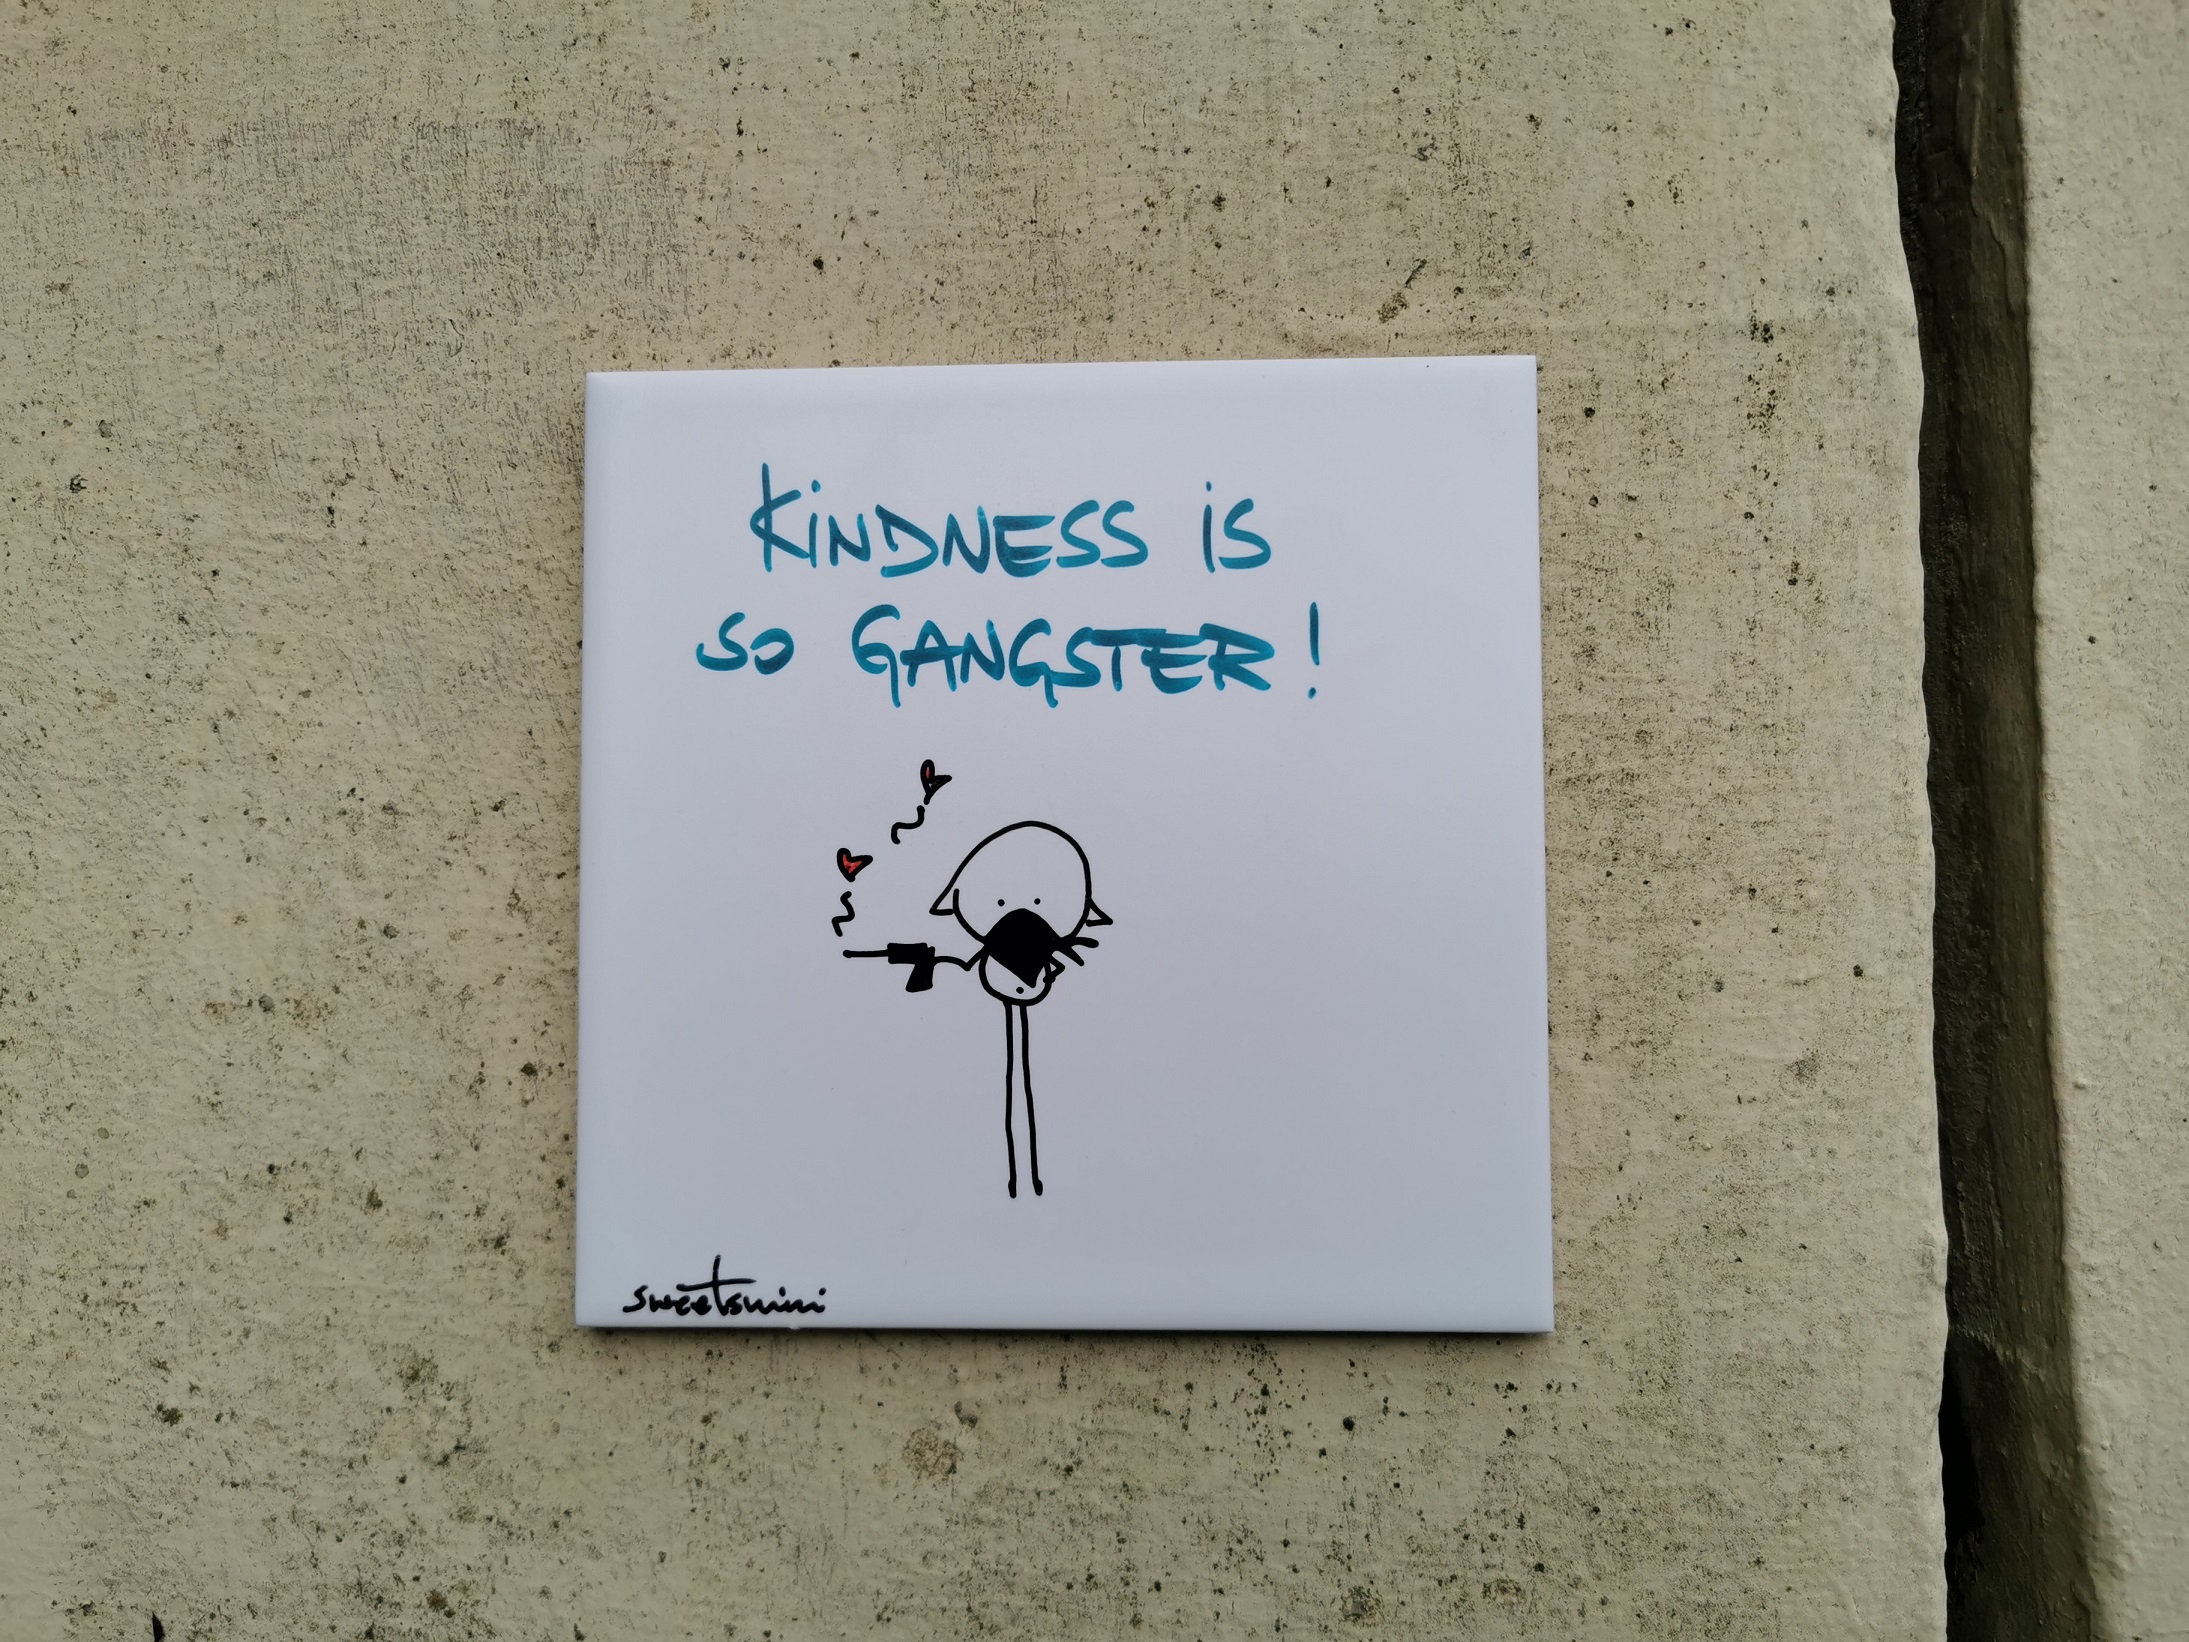 Eine künstlerisch gestaltete quadratische Kachel angebracht an einer Hausmauer. Auf der Kachel steht der Slogan "Kindness is so Gangster!" Darunter ist ein Strichmännchen, welches eine Pistole hält aus der Herzen geschossen kommen.